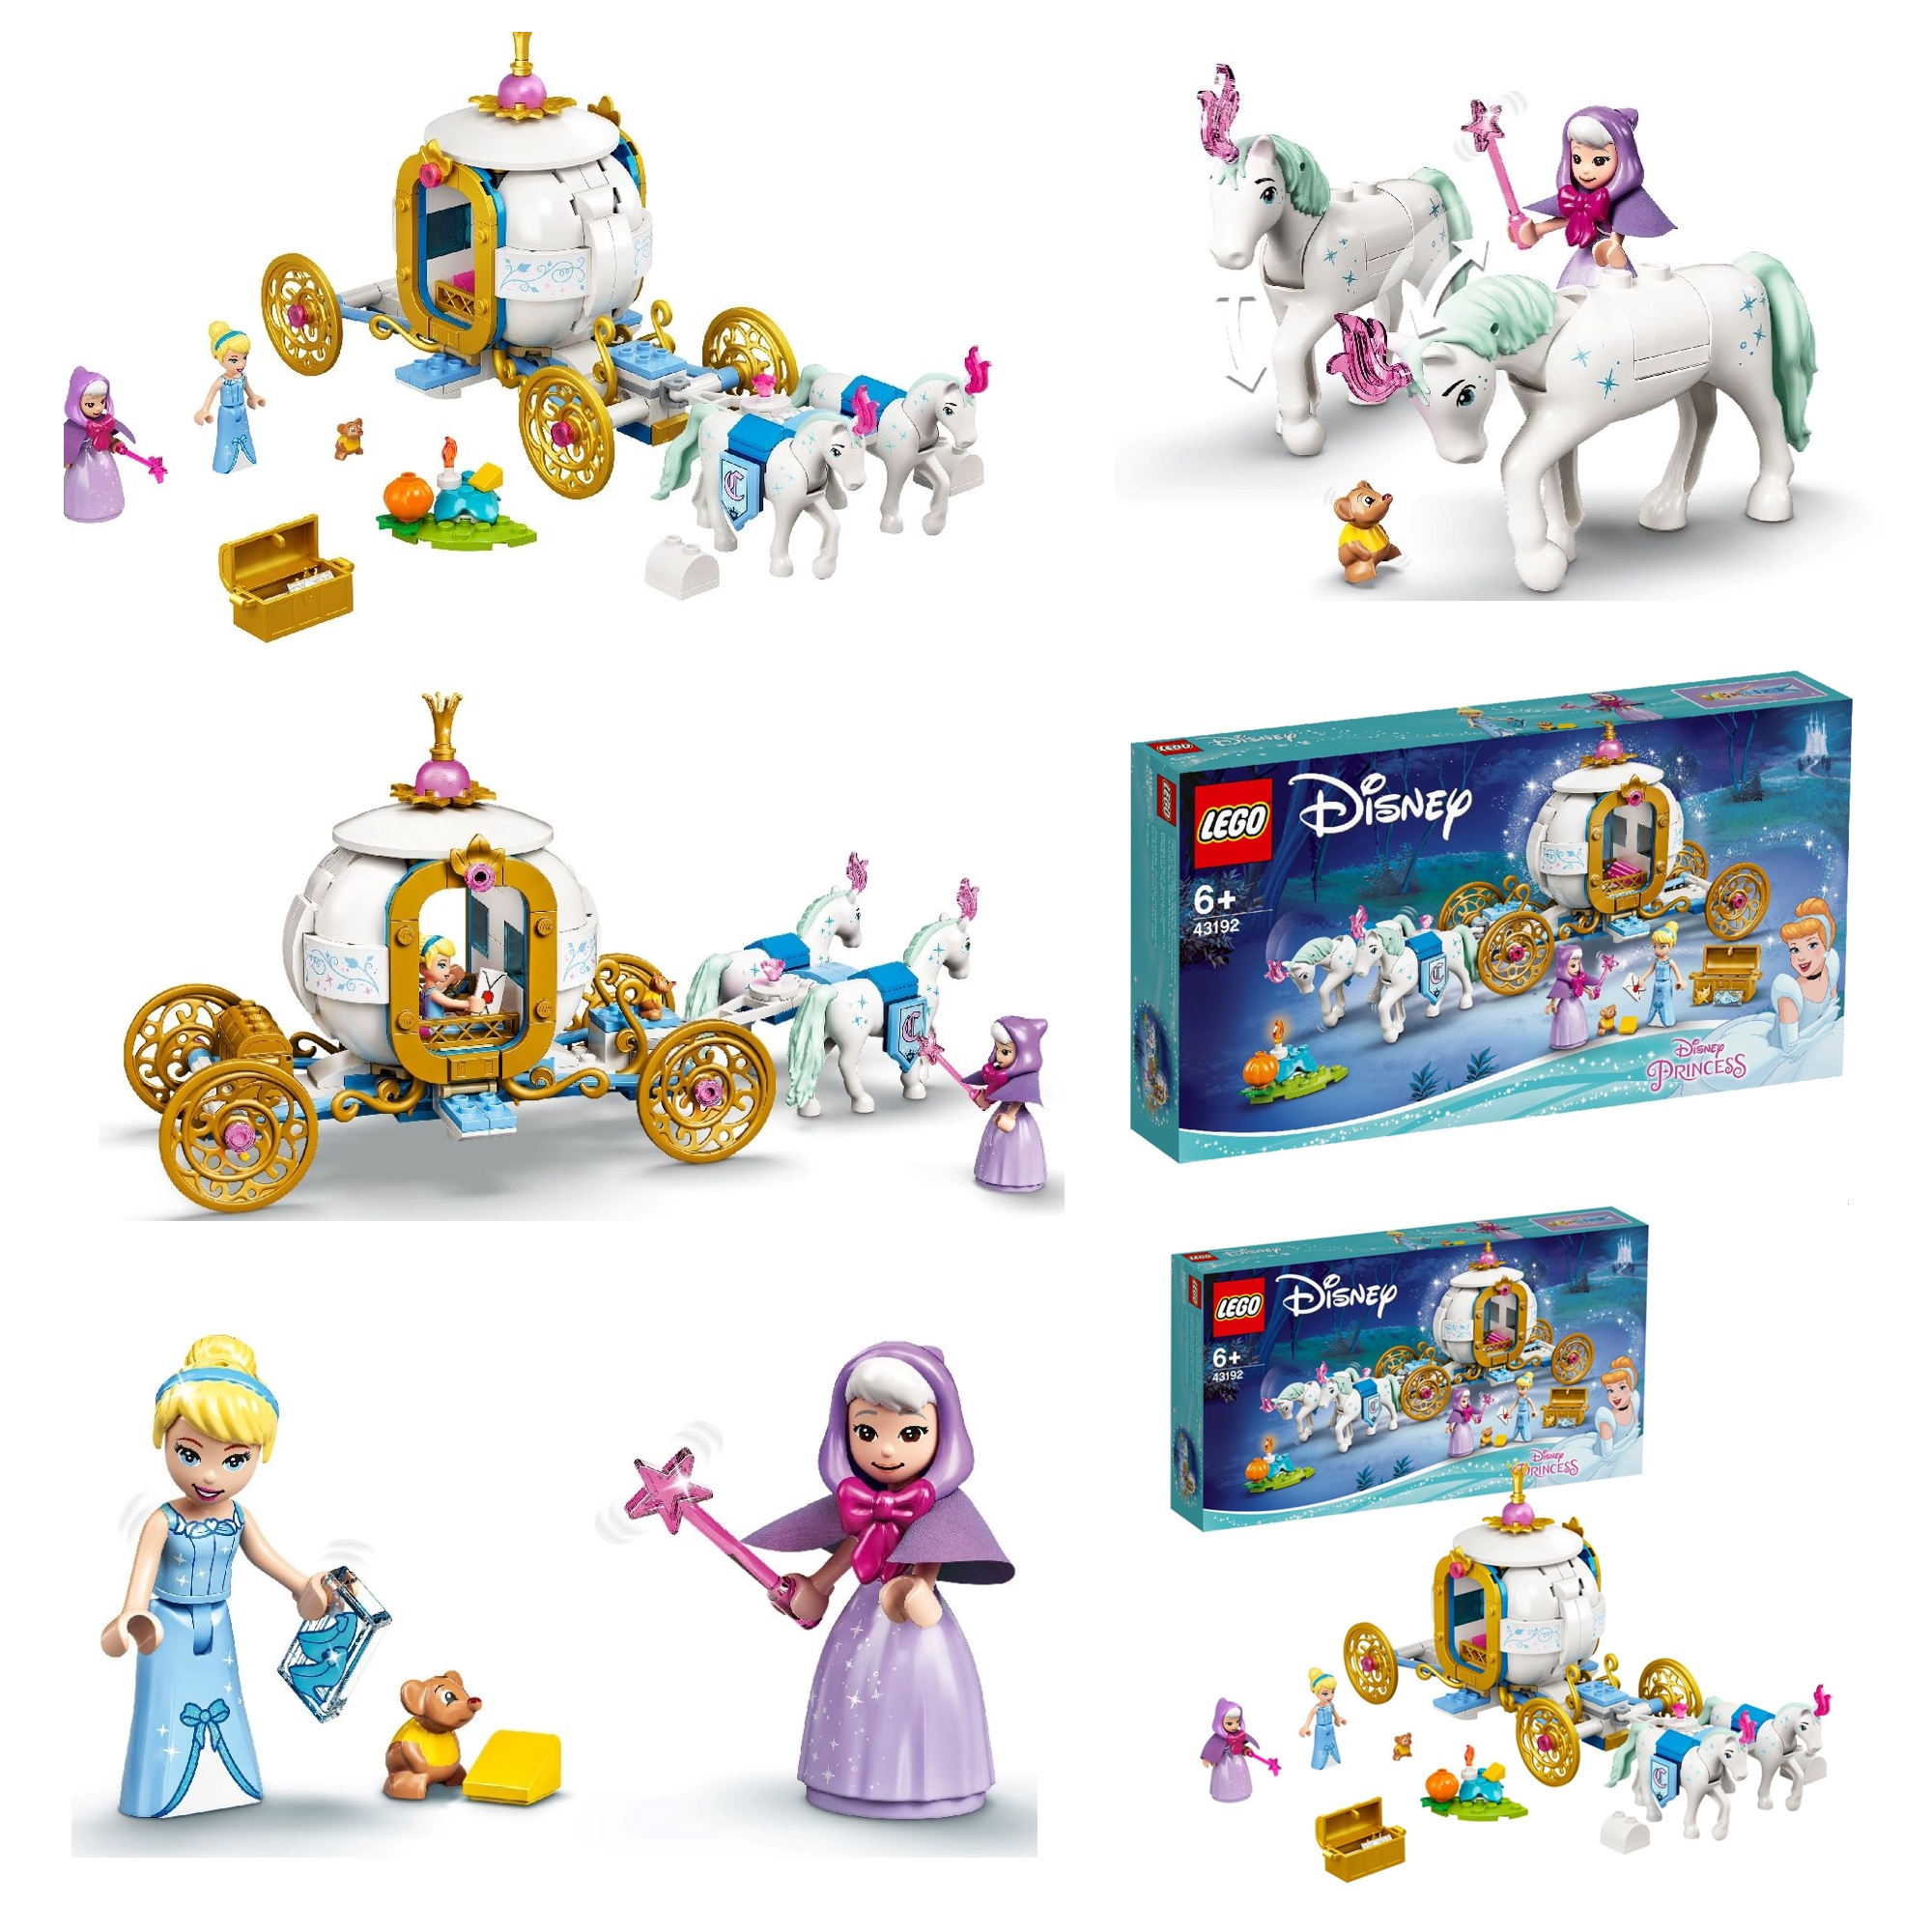 21年レゴ ディズニープリンセス新製品情報 みんな大好きお姫様シリーズ スタッズ レゴの楽しさを伝えるwebメディア